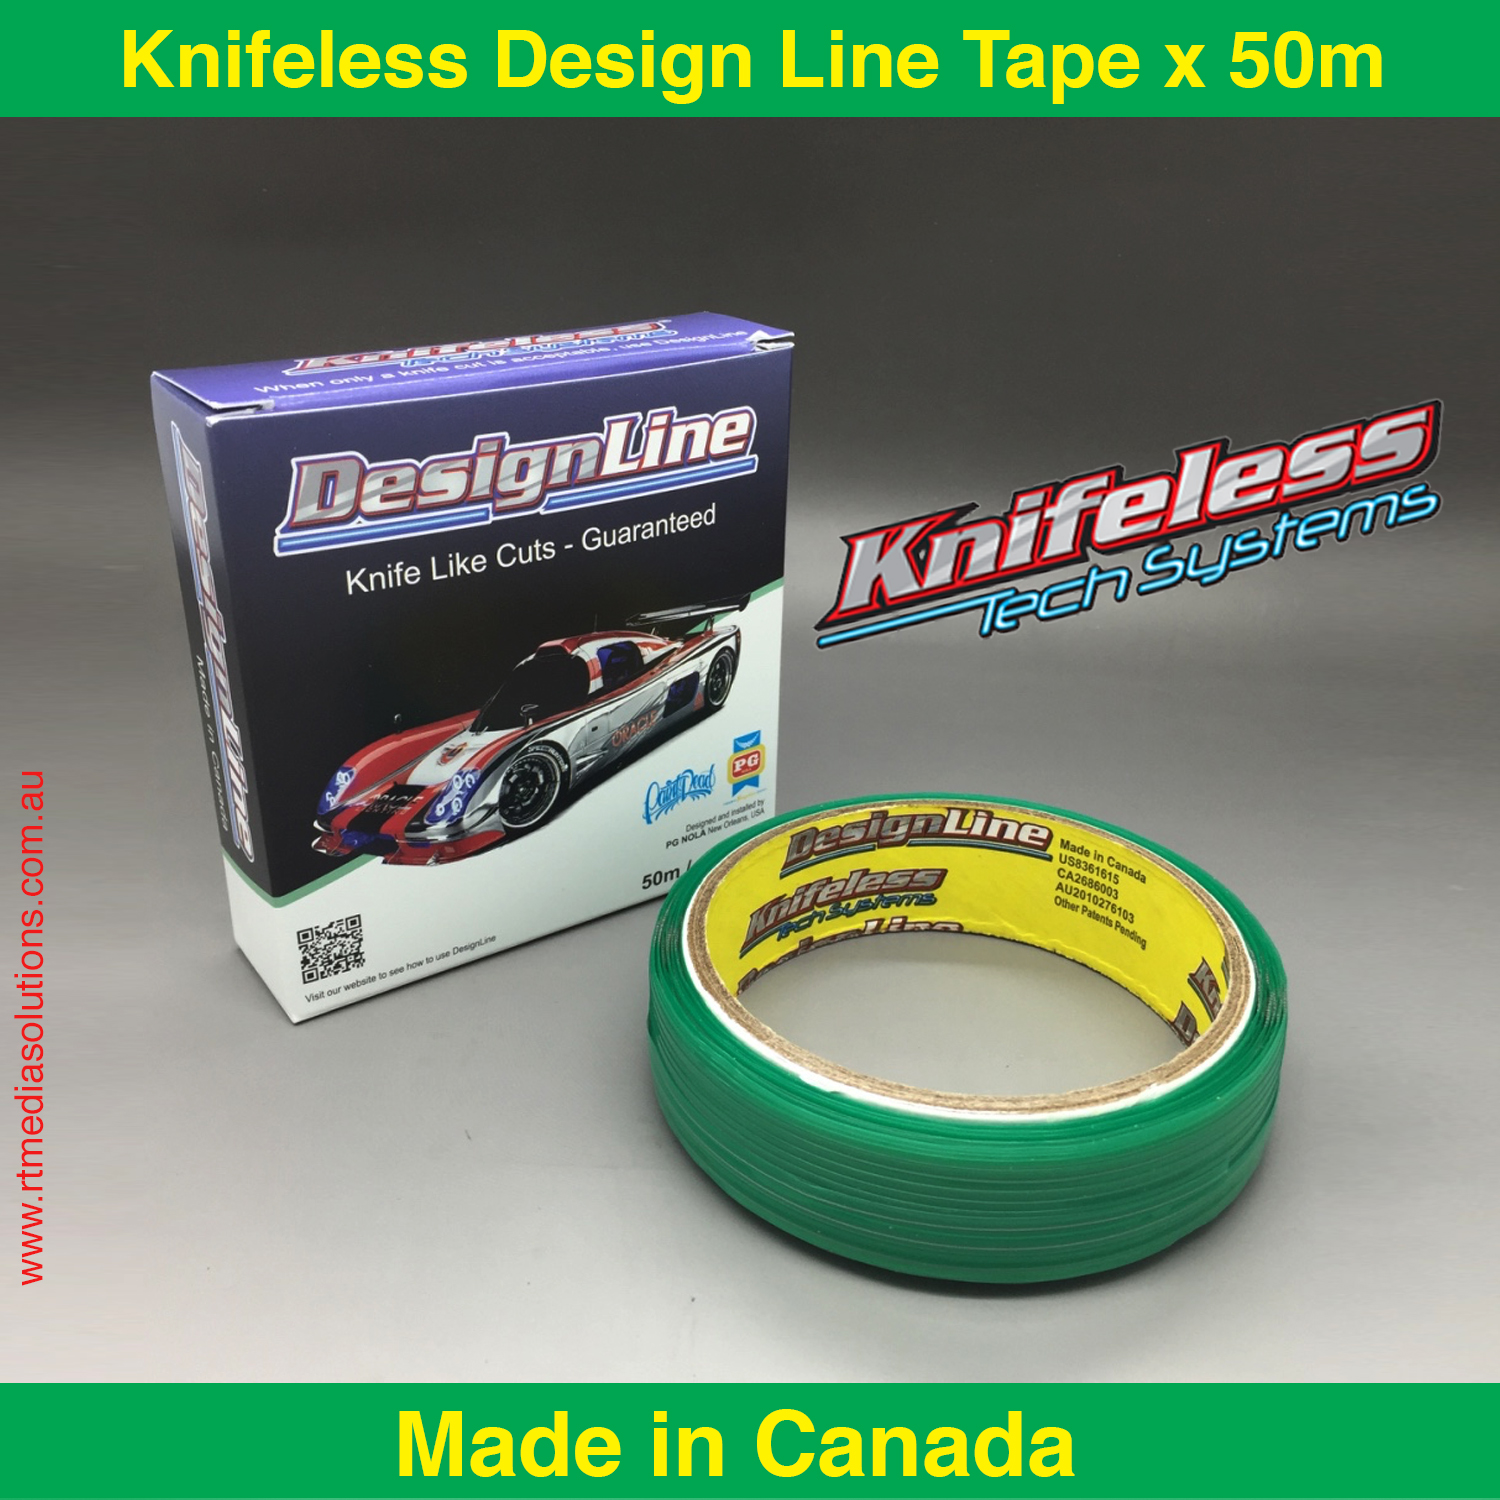 3M Knifeless Design Line Tape x 50m - RT Media Solutions